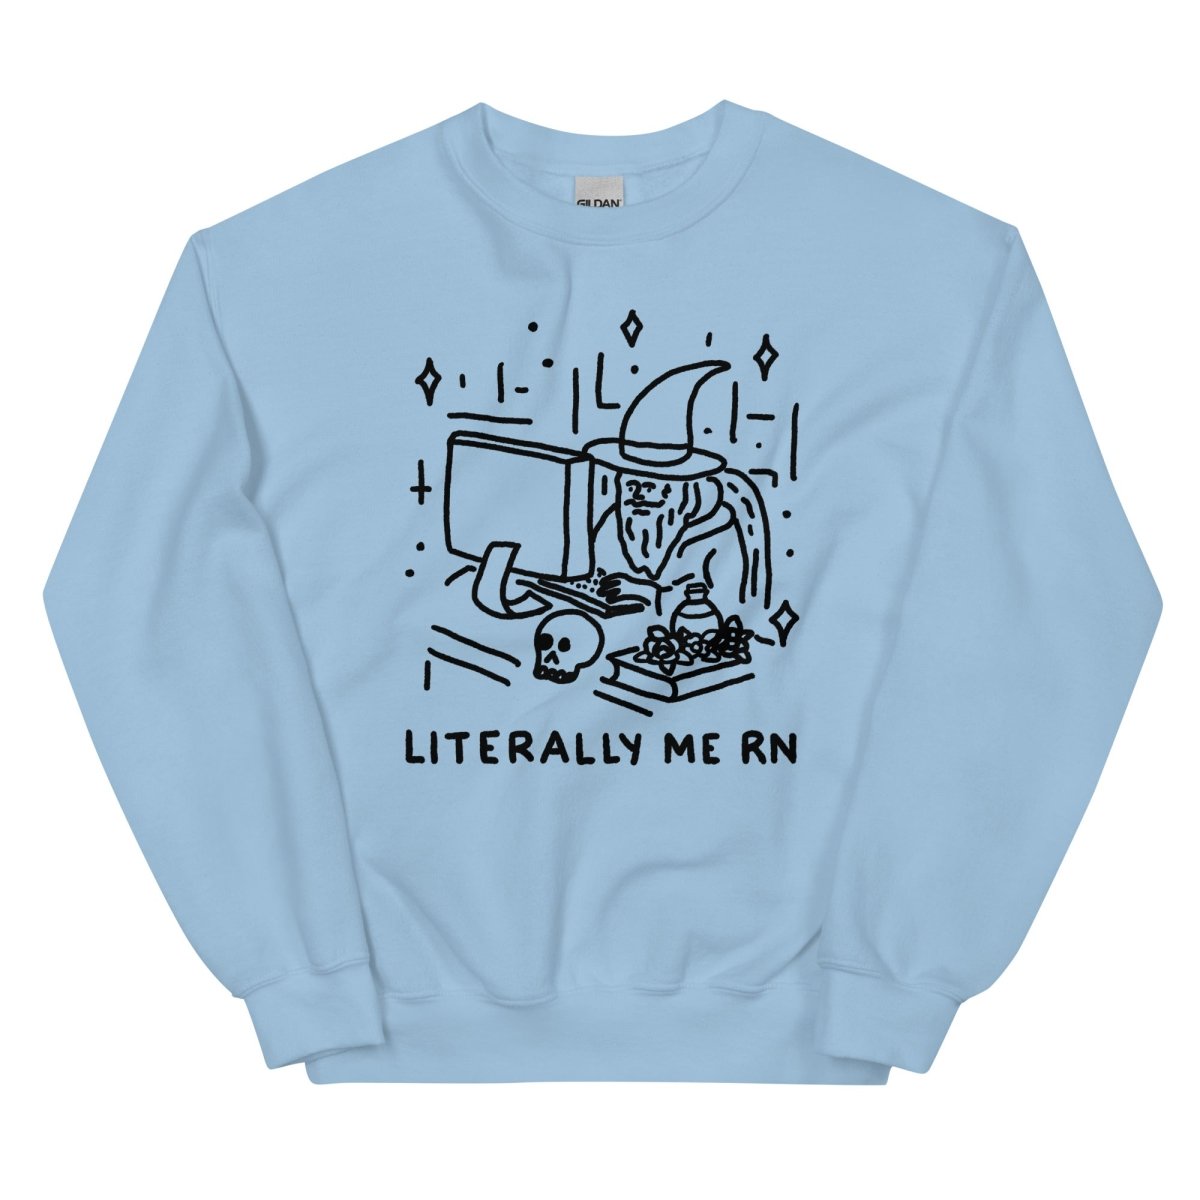 Literally me rn sweatshirt - Pretty Bad Co.